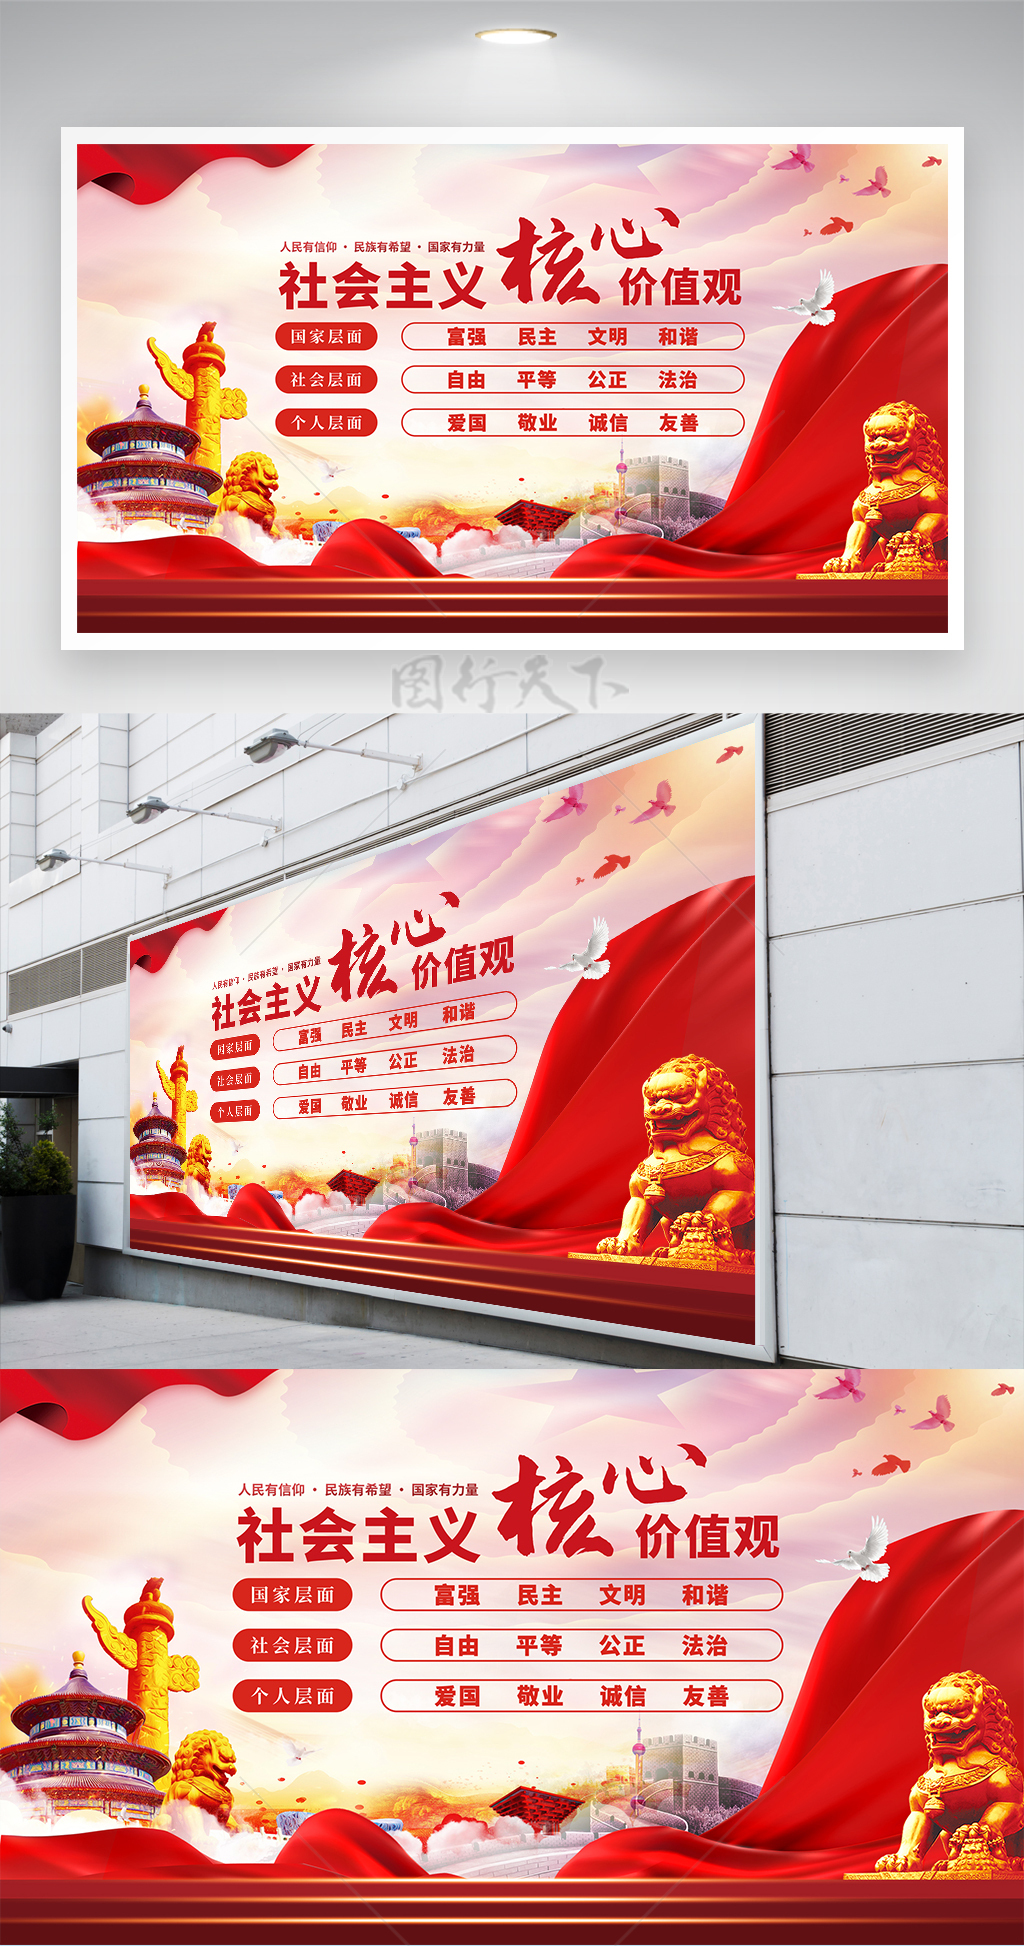 社会主义核心价值观构筑中国精神宣传展板 